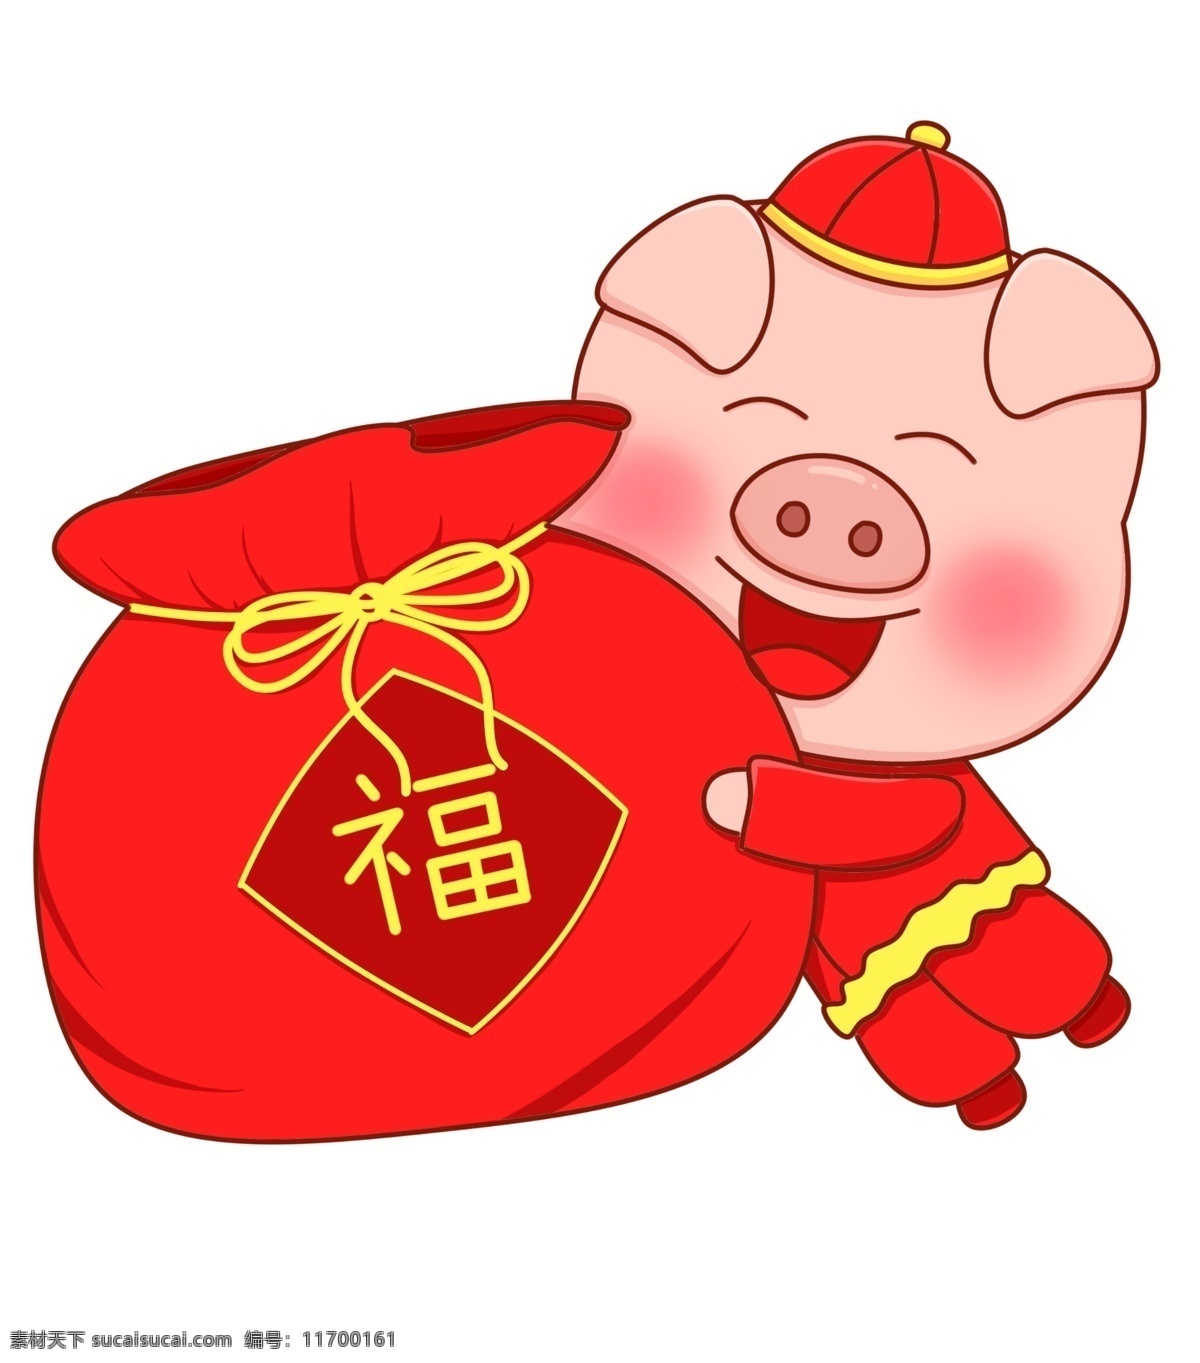 猪年 新年 2019 农历 金 猪 福 袋 红色 喜气 卡通 免 扣 农历新年 金猪 福袋 福气 喜气洋洋 手绘 免扣